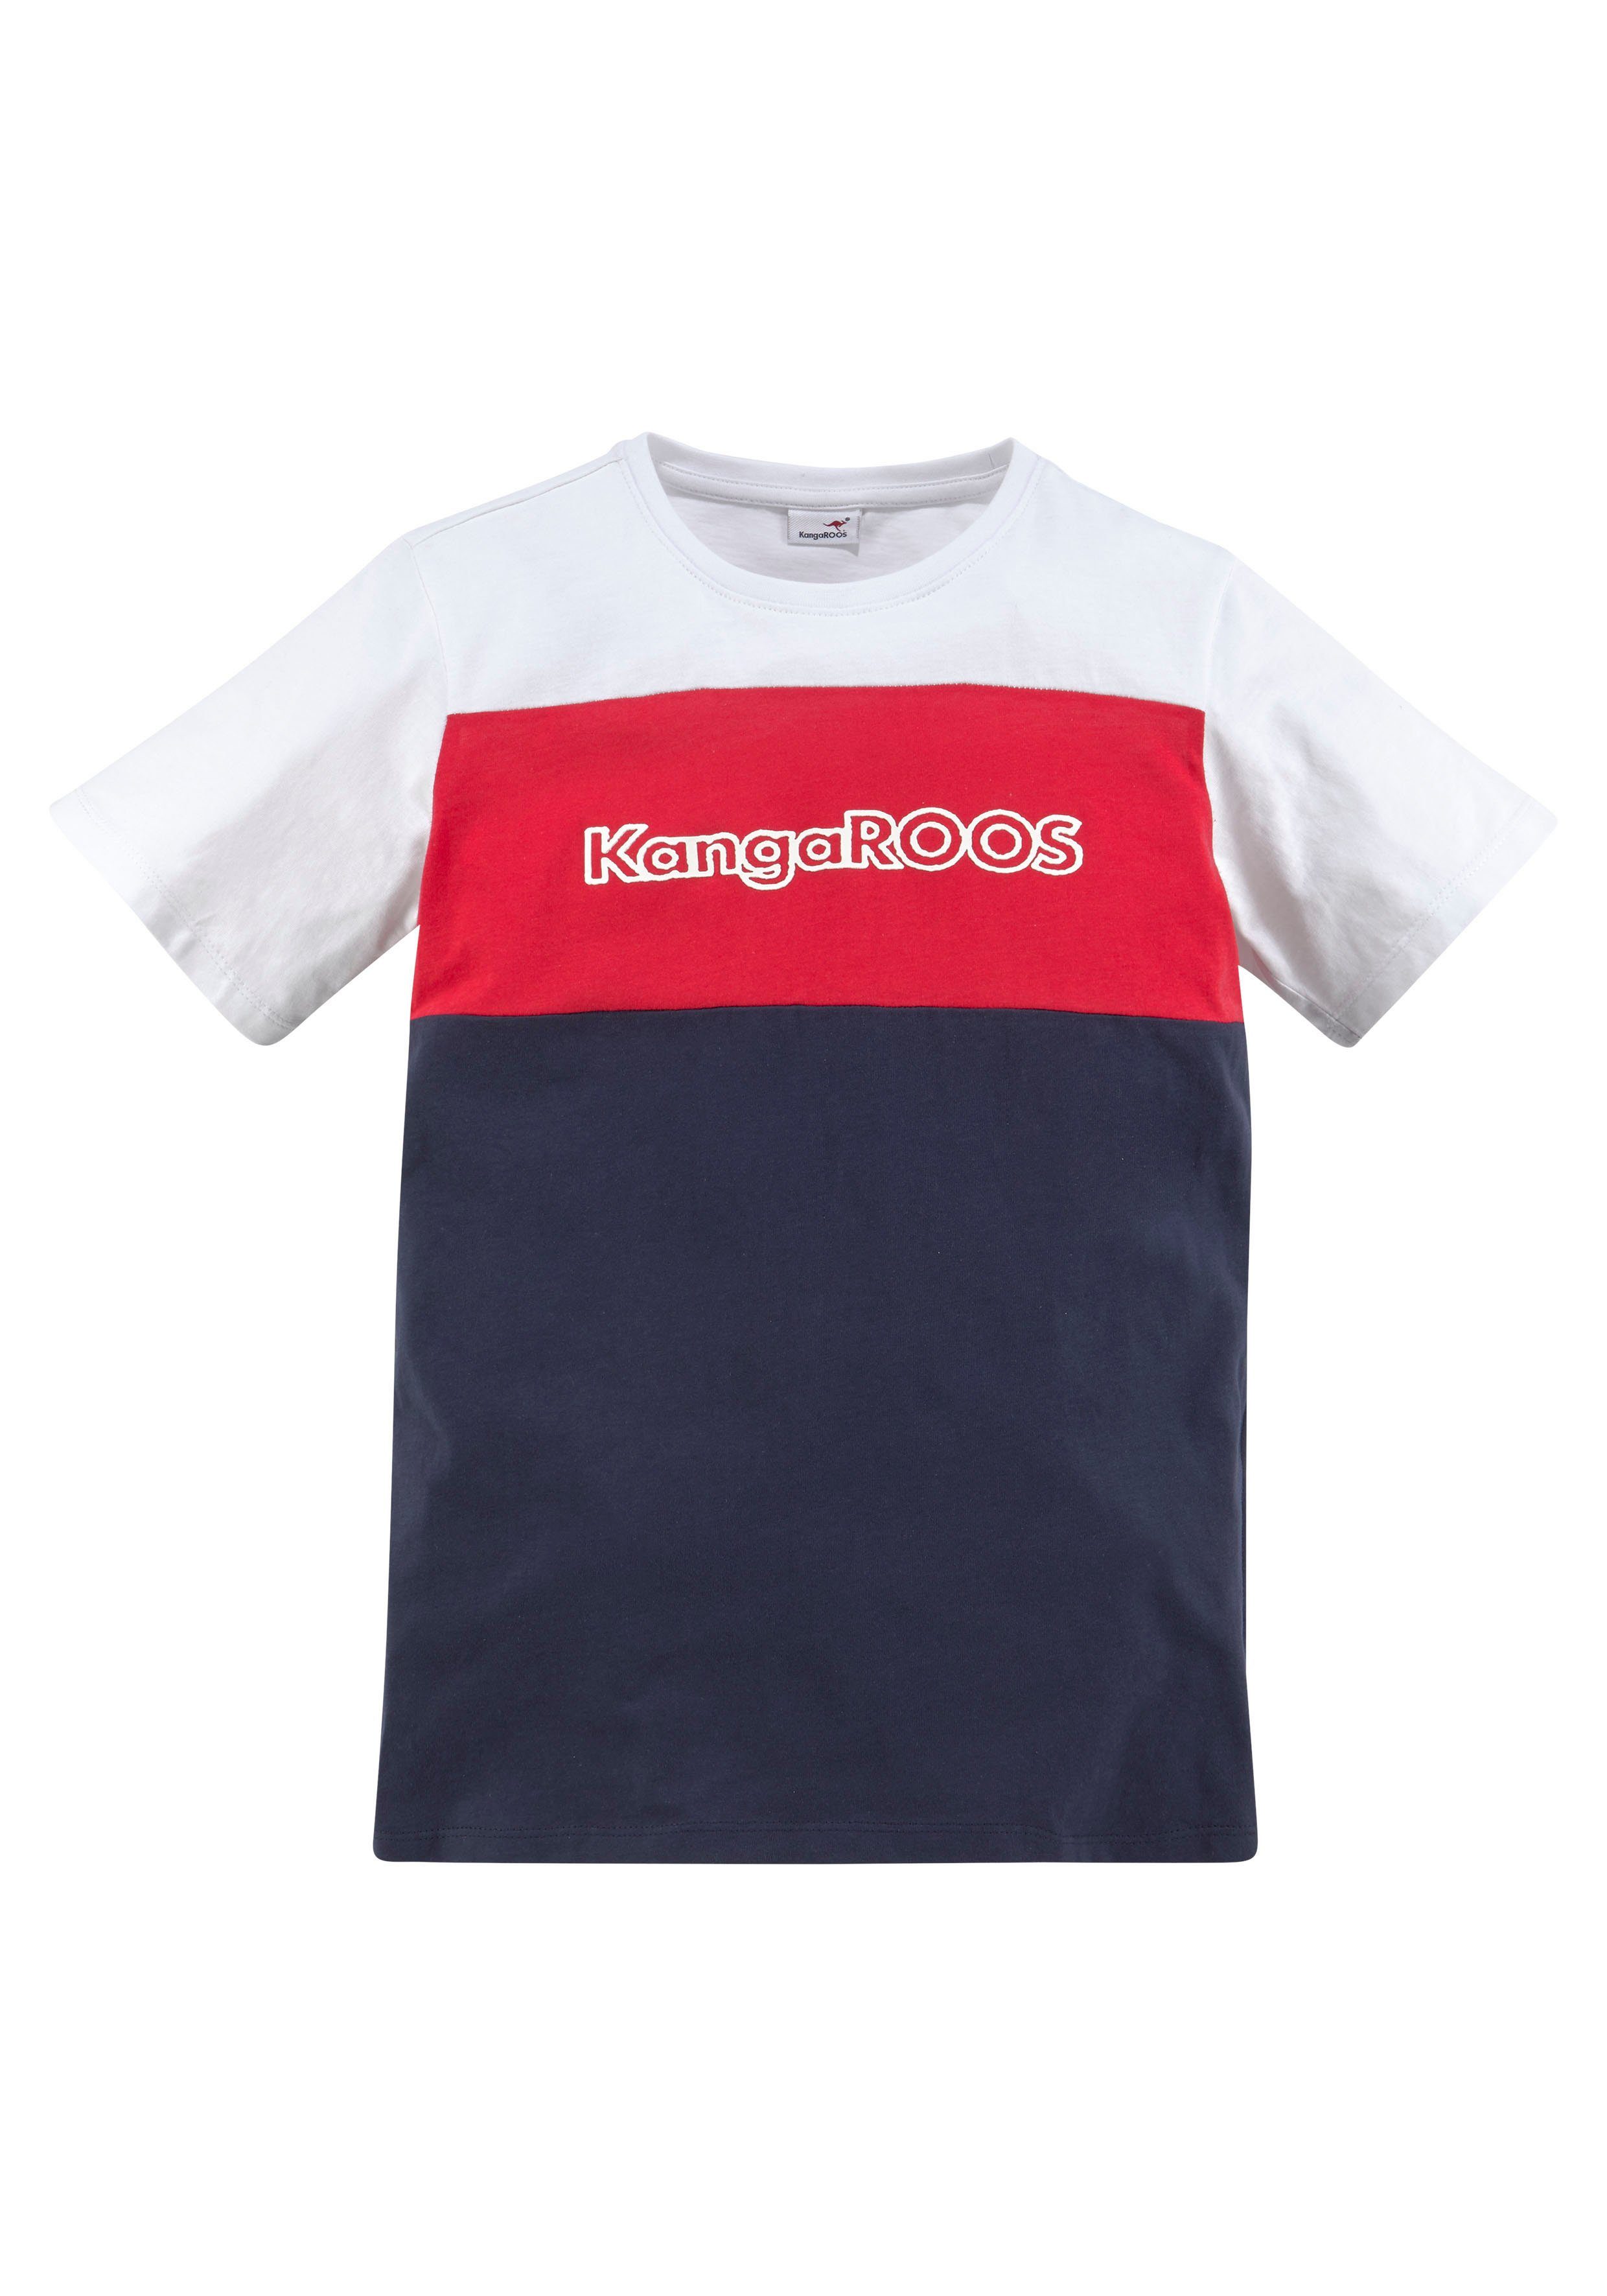 in Colorblockdesign KangaROOS T-Shirt